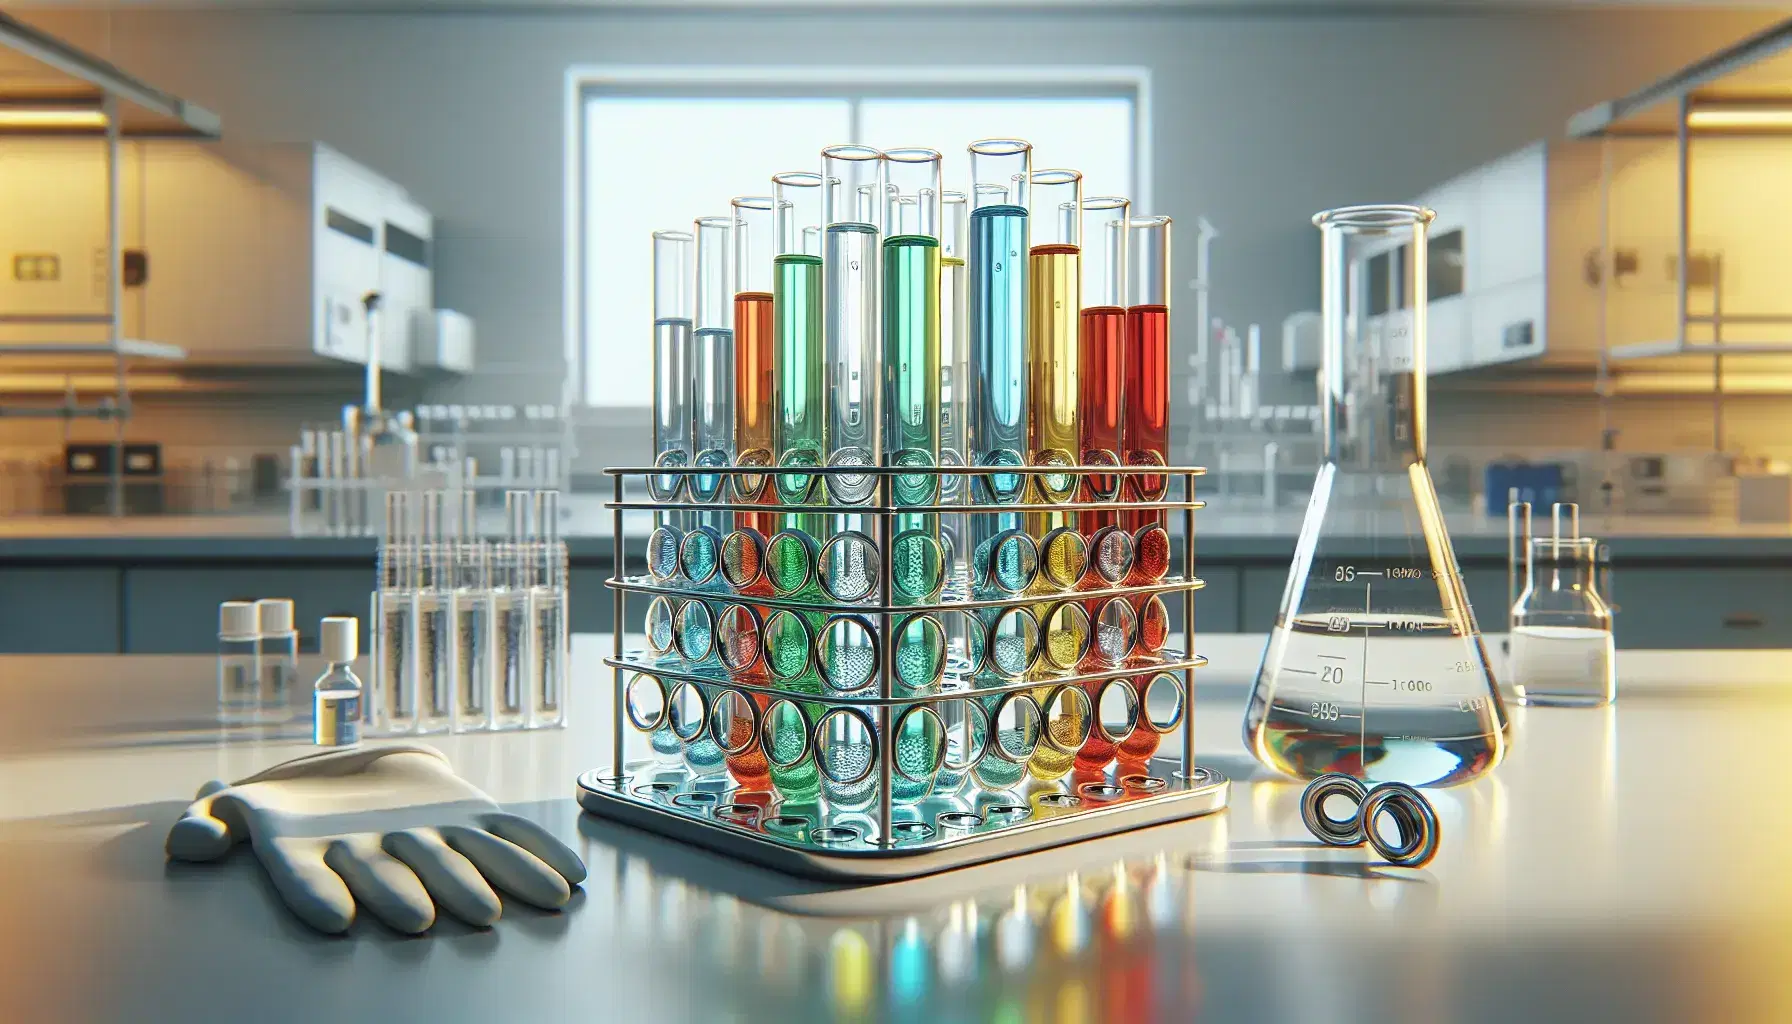 Tubos de ensayo con líquidos de colores en gradiente en soporte metálico sobre mesa de laboratorio, guante de látex a la izquierda y matraz Erlenmeyer a la derecha.